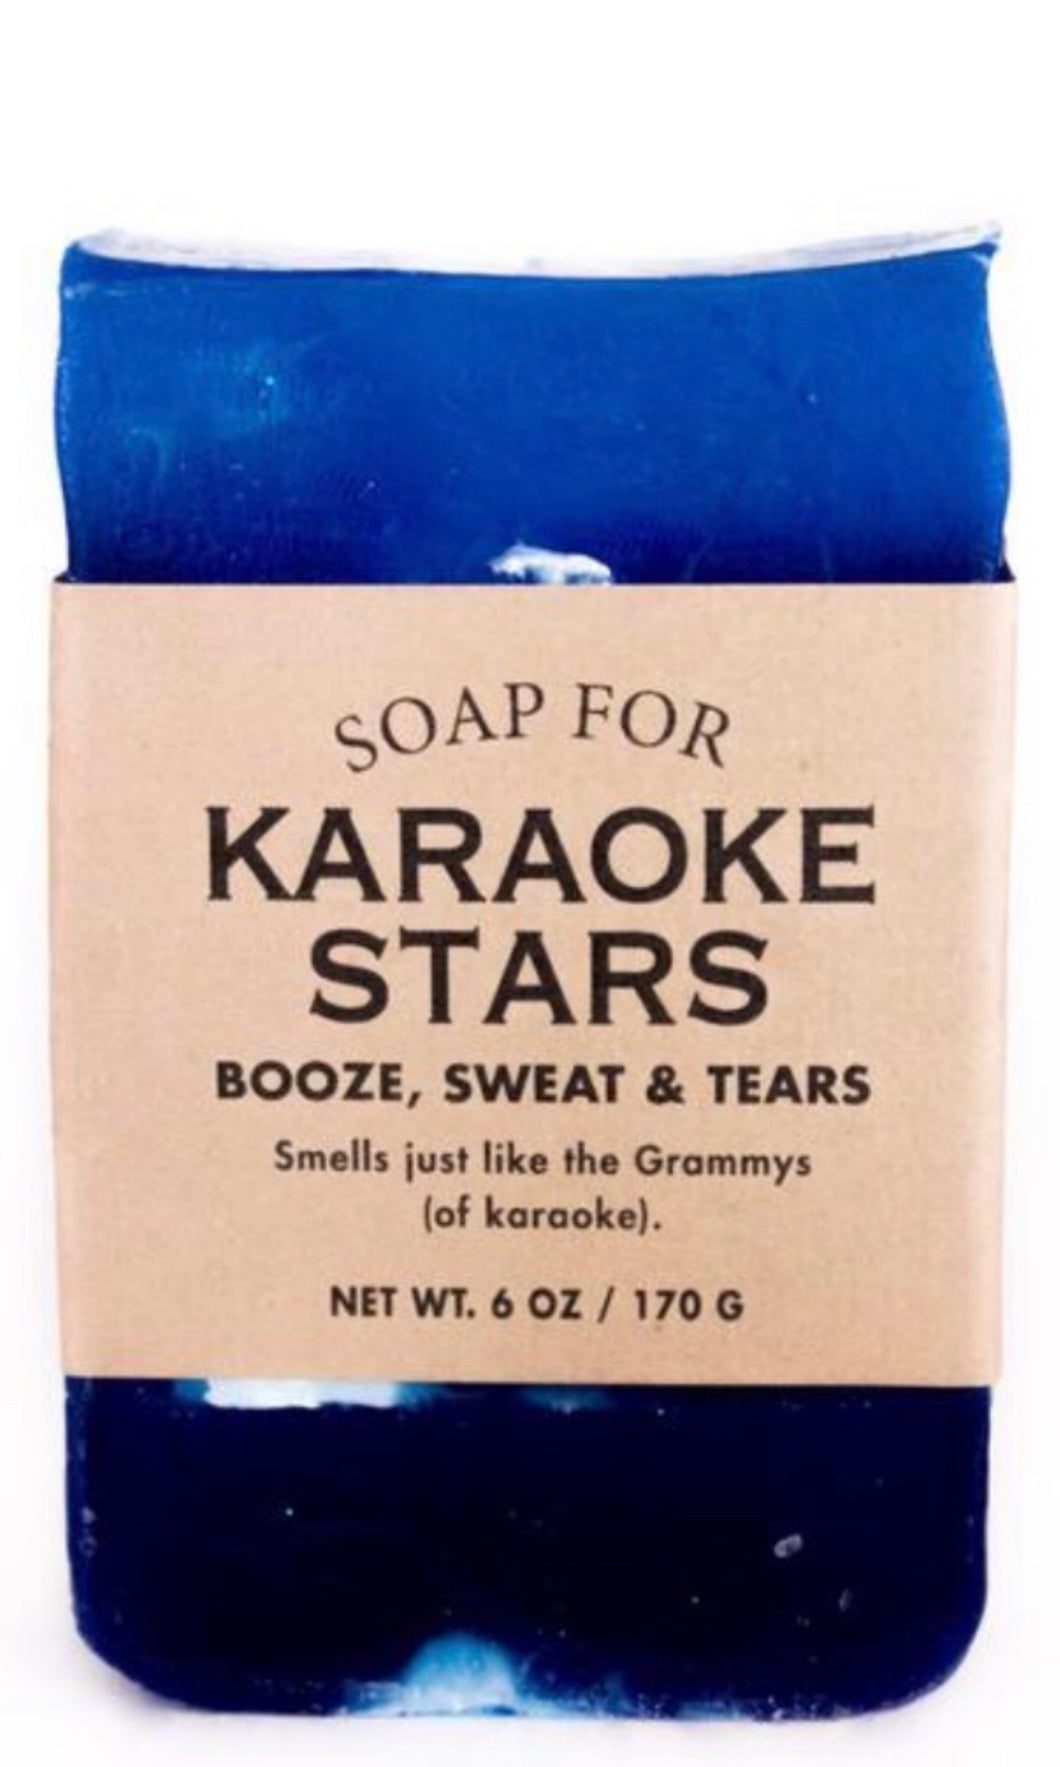 Whisky River Soap for Karaoke Stars-